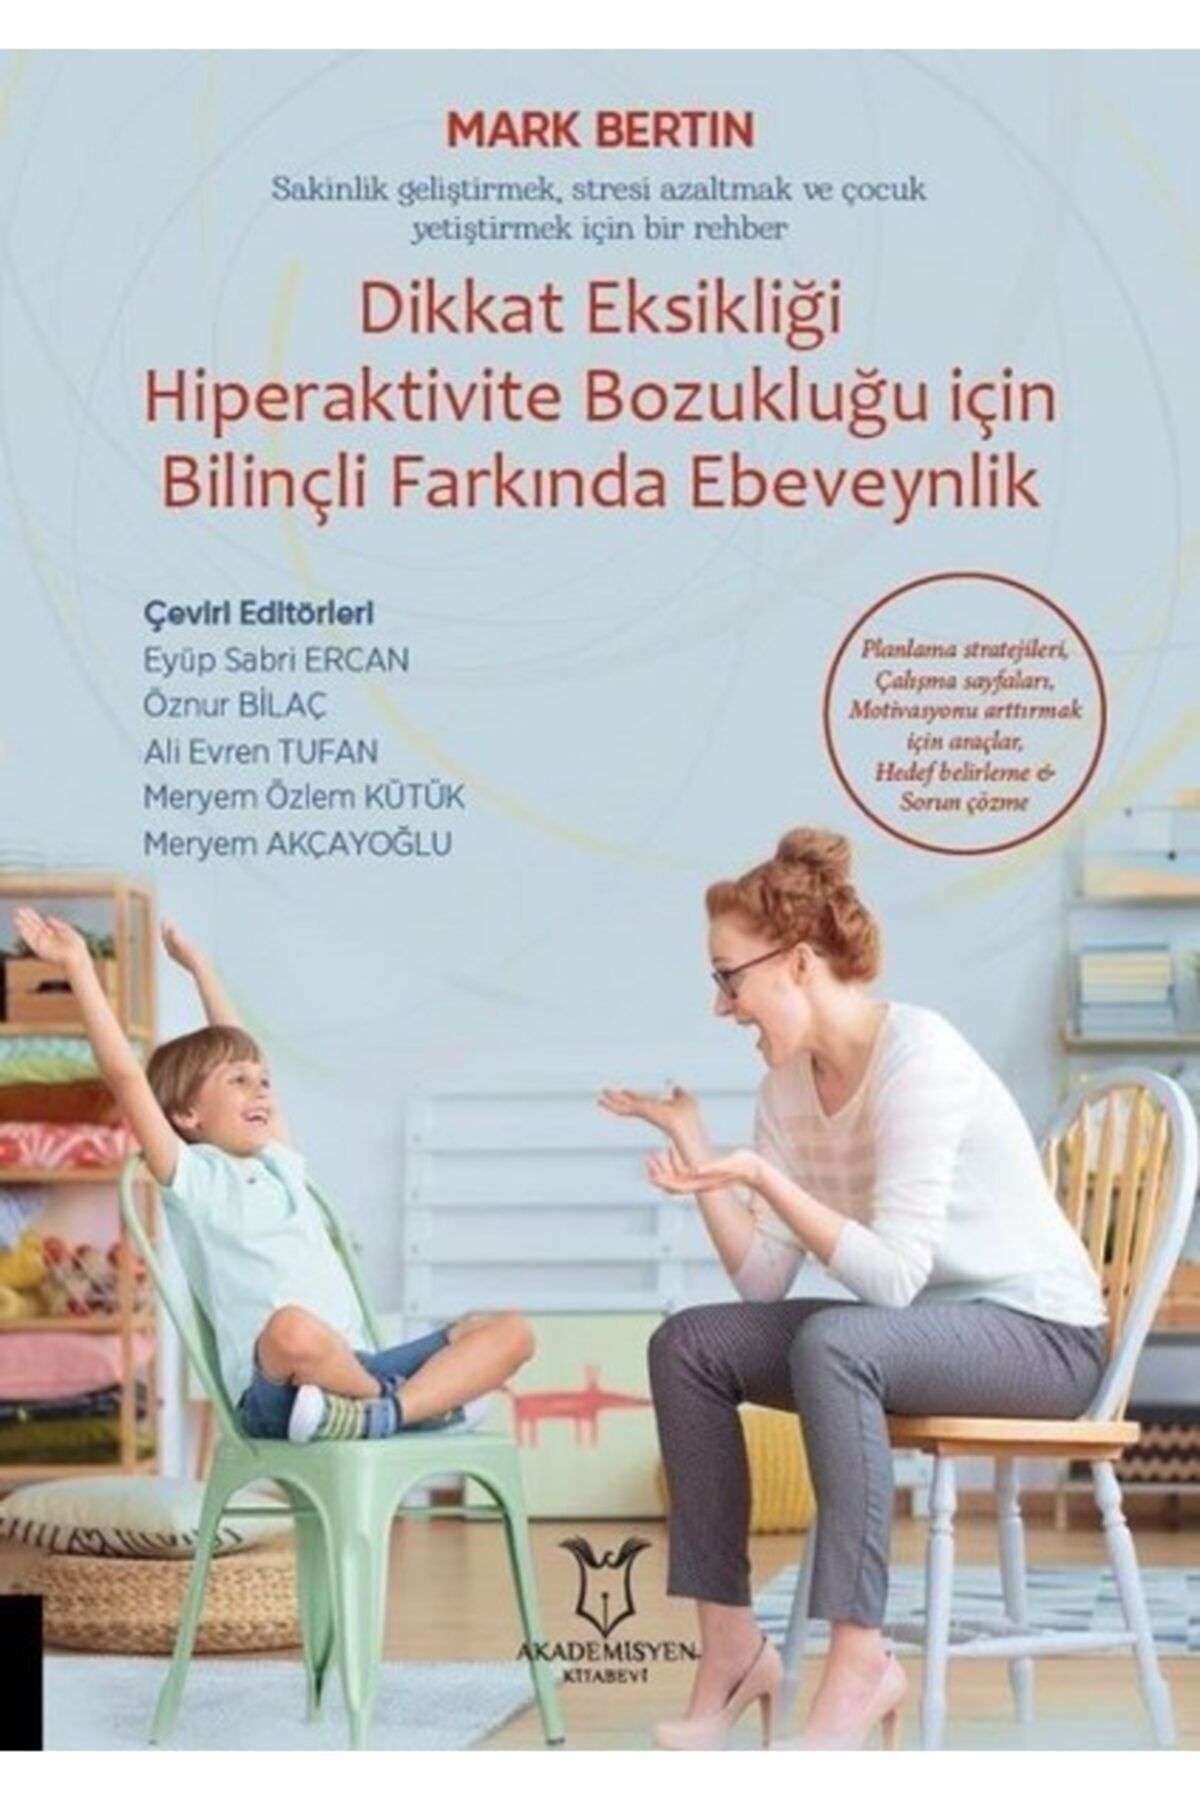 Akademisyen Kitabevi Dikkat Eksikliği Hiperaktivite Bozukluğu Için Bilinçli Farkında Ebeveynlik & Sakinlik Geliştirmek...